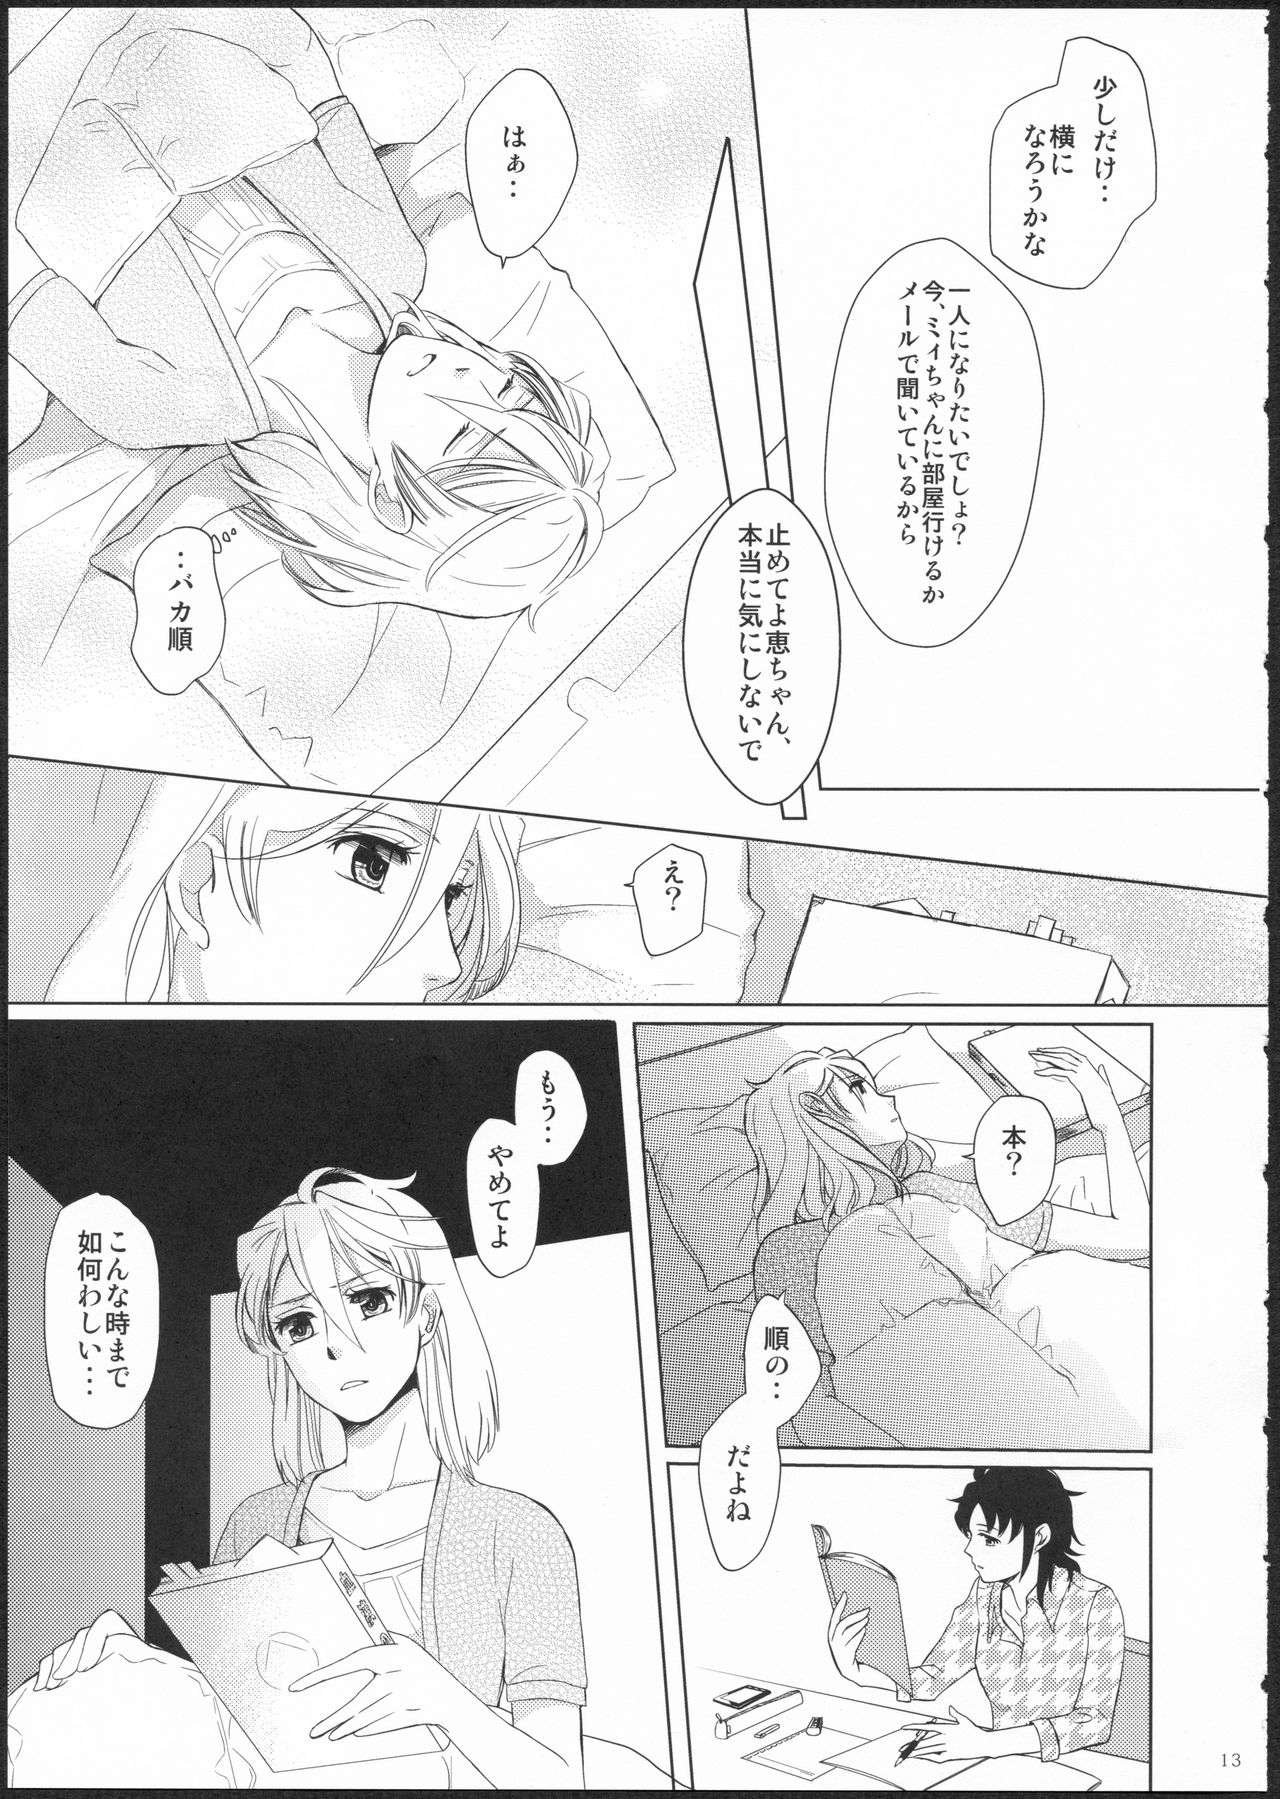 (GirlsLoveFestival11) [No.3 (Kamonasu, Sakuraba, Yuyuki)] METEORA (Hayate x Blade) 11